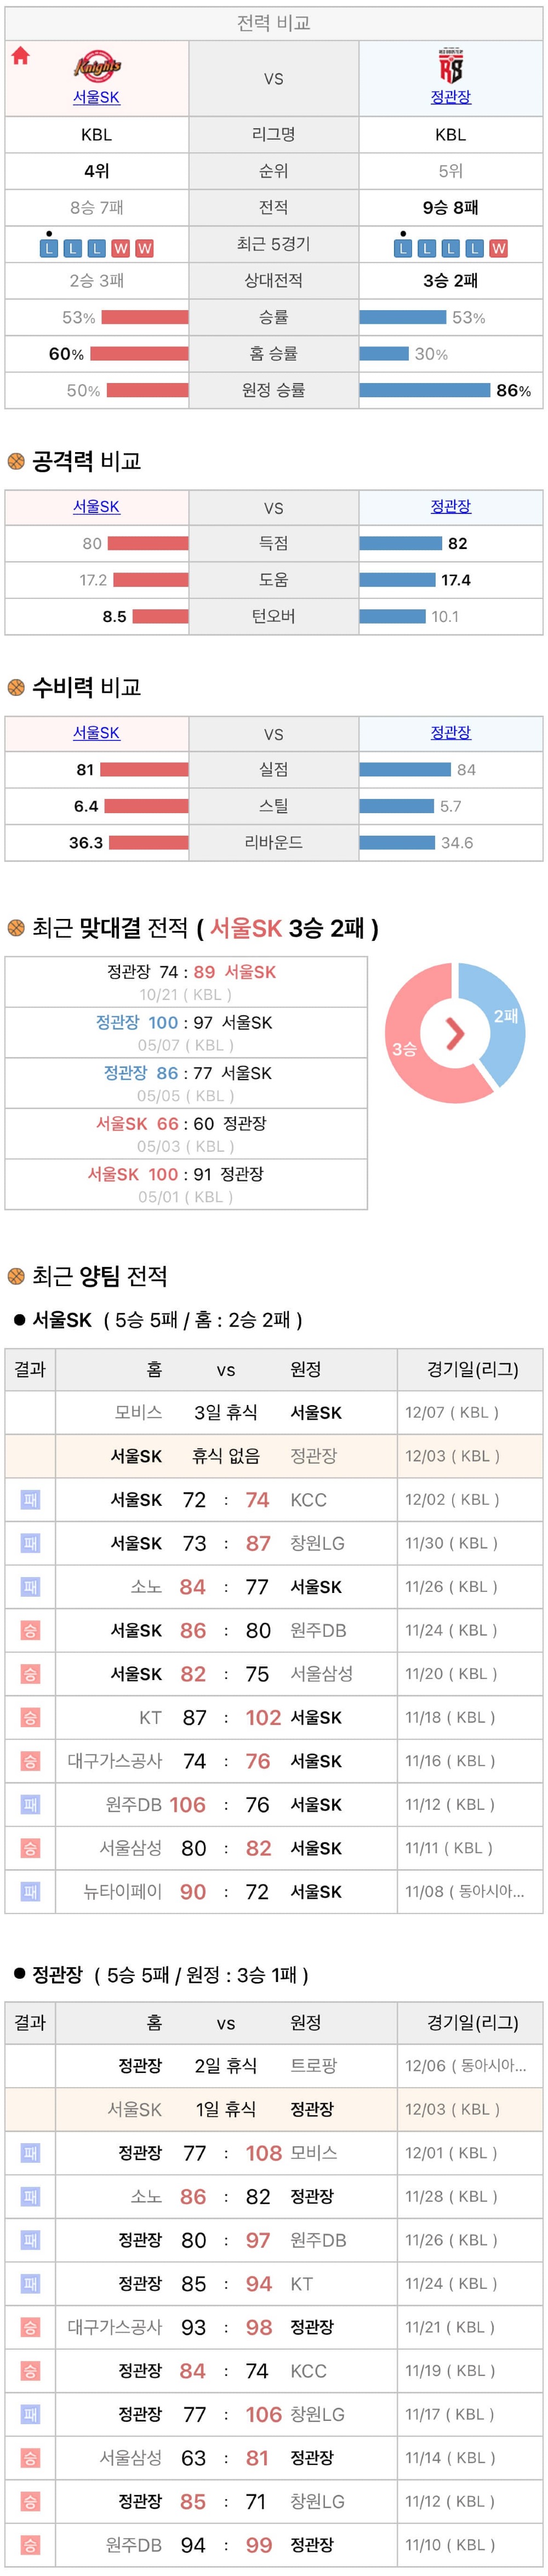 12월3일 KBL 프로농구 서울SK vs 안양정관장 분석